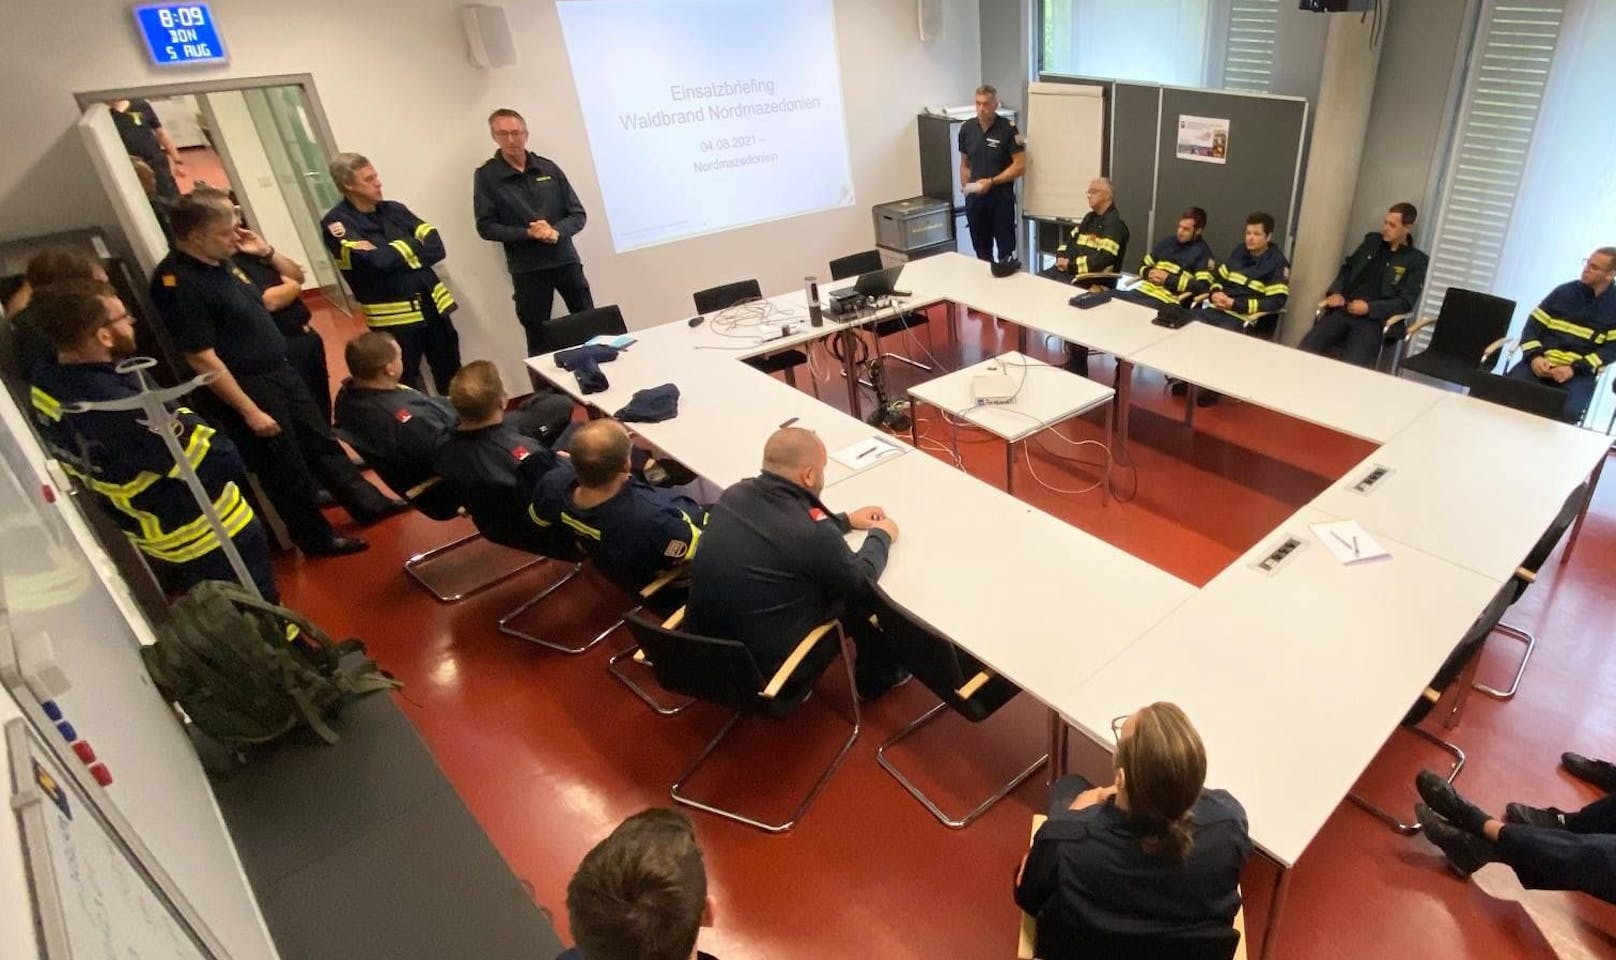 Im "Landesführungsstab Feuerwehr" in Tulln wird die erste Einheit der insgesamt 60 Mitglieder umfassenden Löschtruppe für den Großeinsatz in Nordmazedonien vorbereitet.